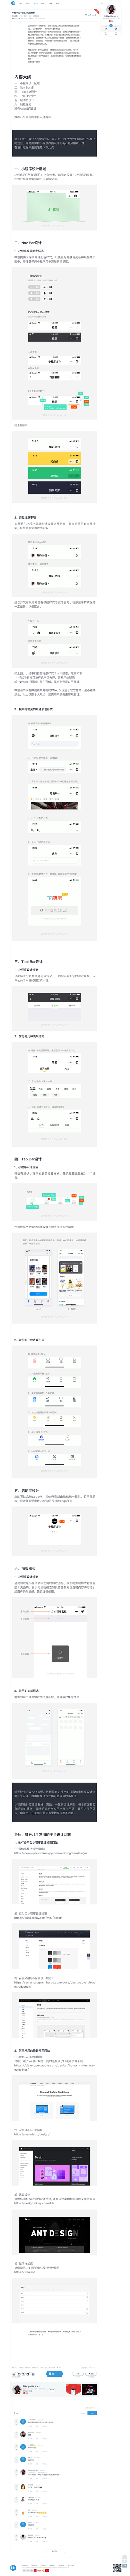 小程序设计规范及经验分享-UI中国-专业...